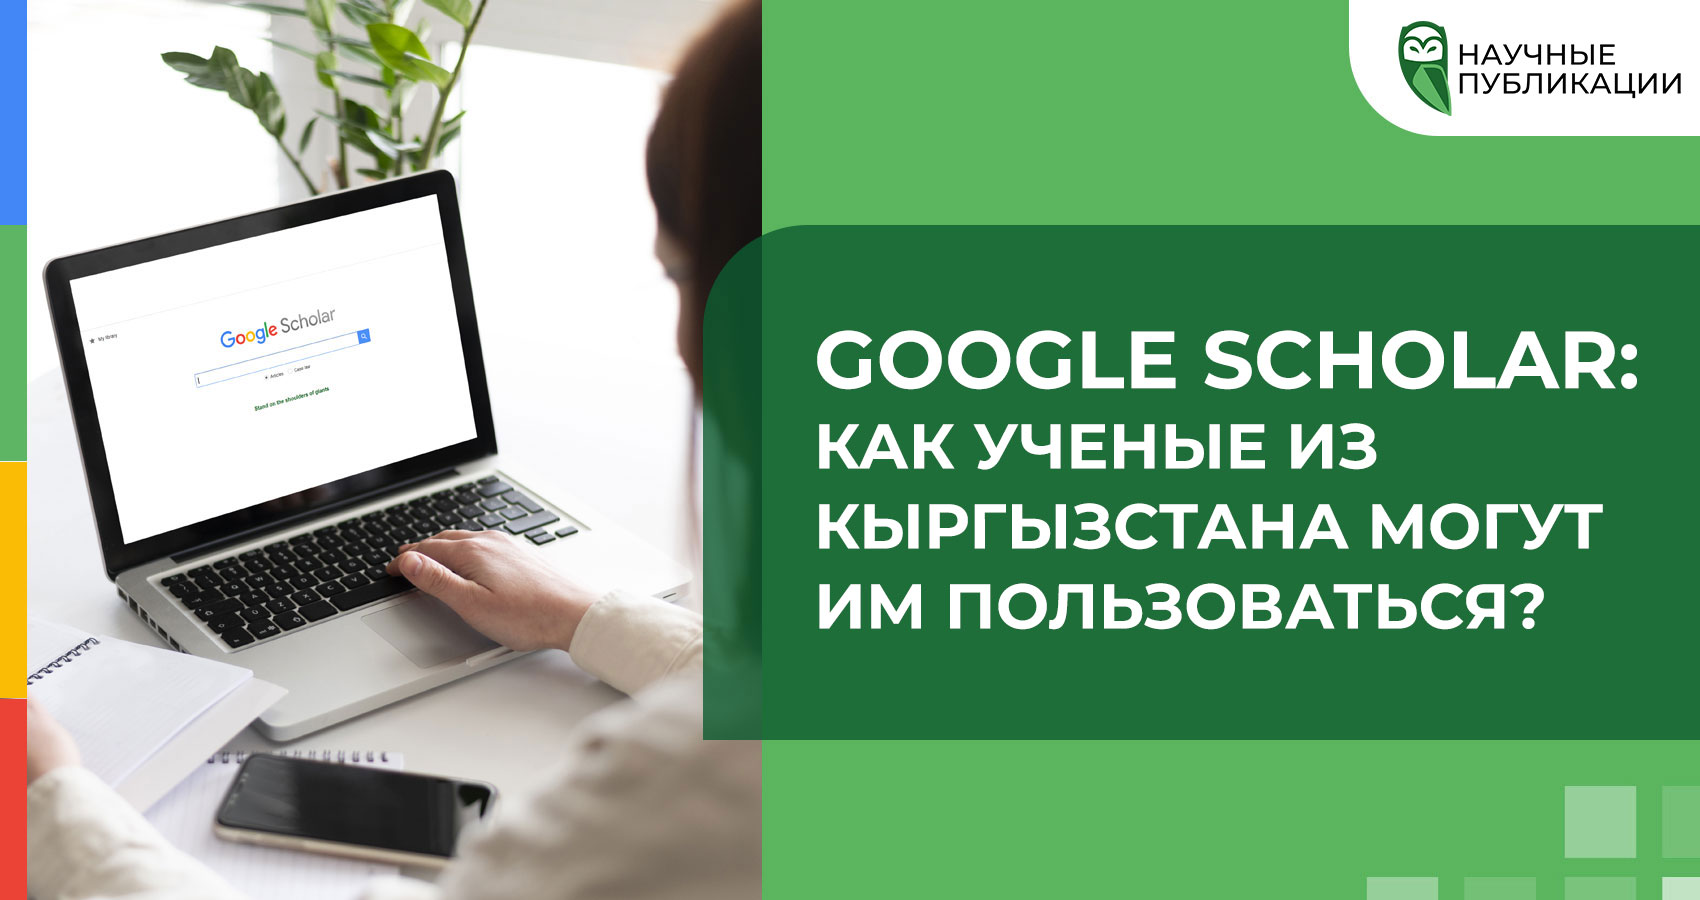 Google Scholar: как пользоваться ученым из Кыргызстана?